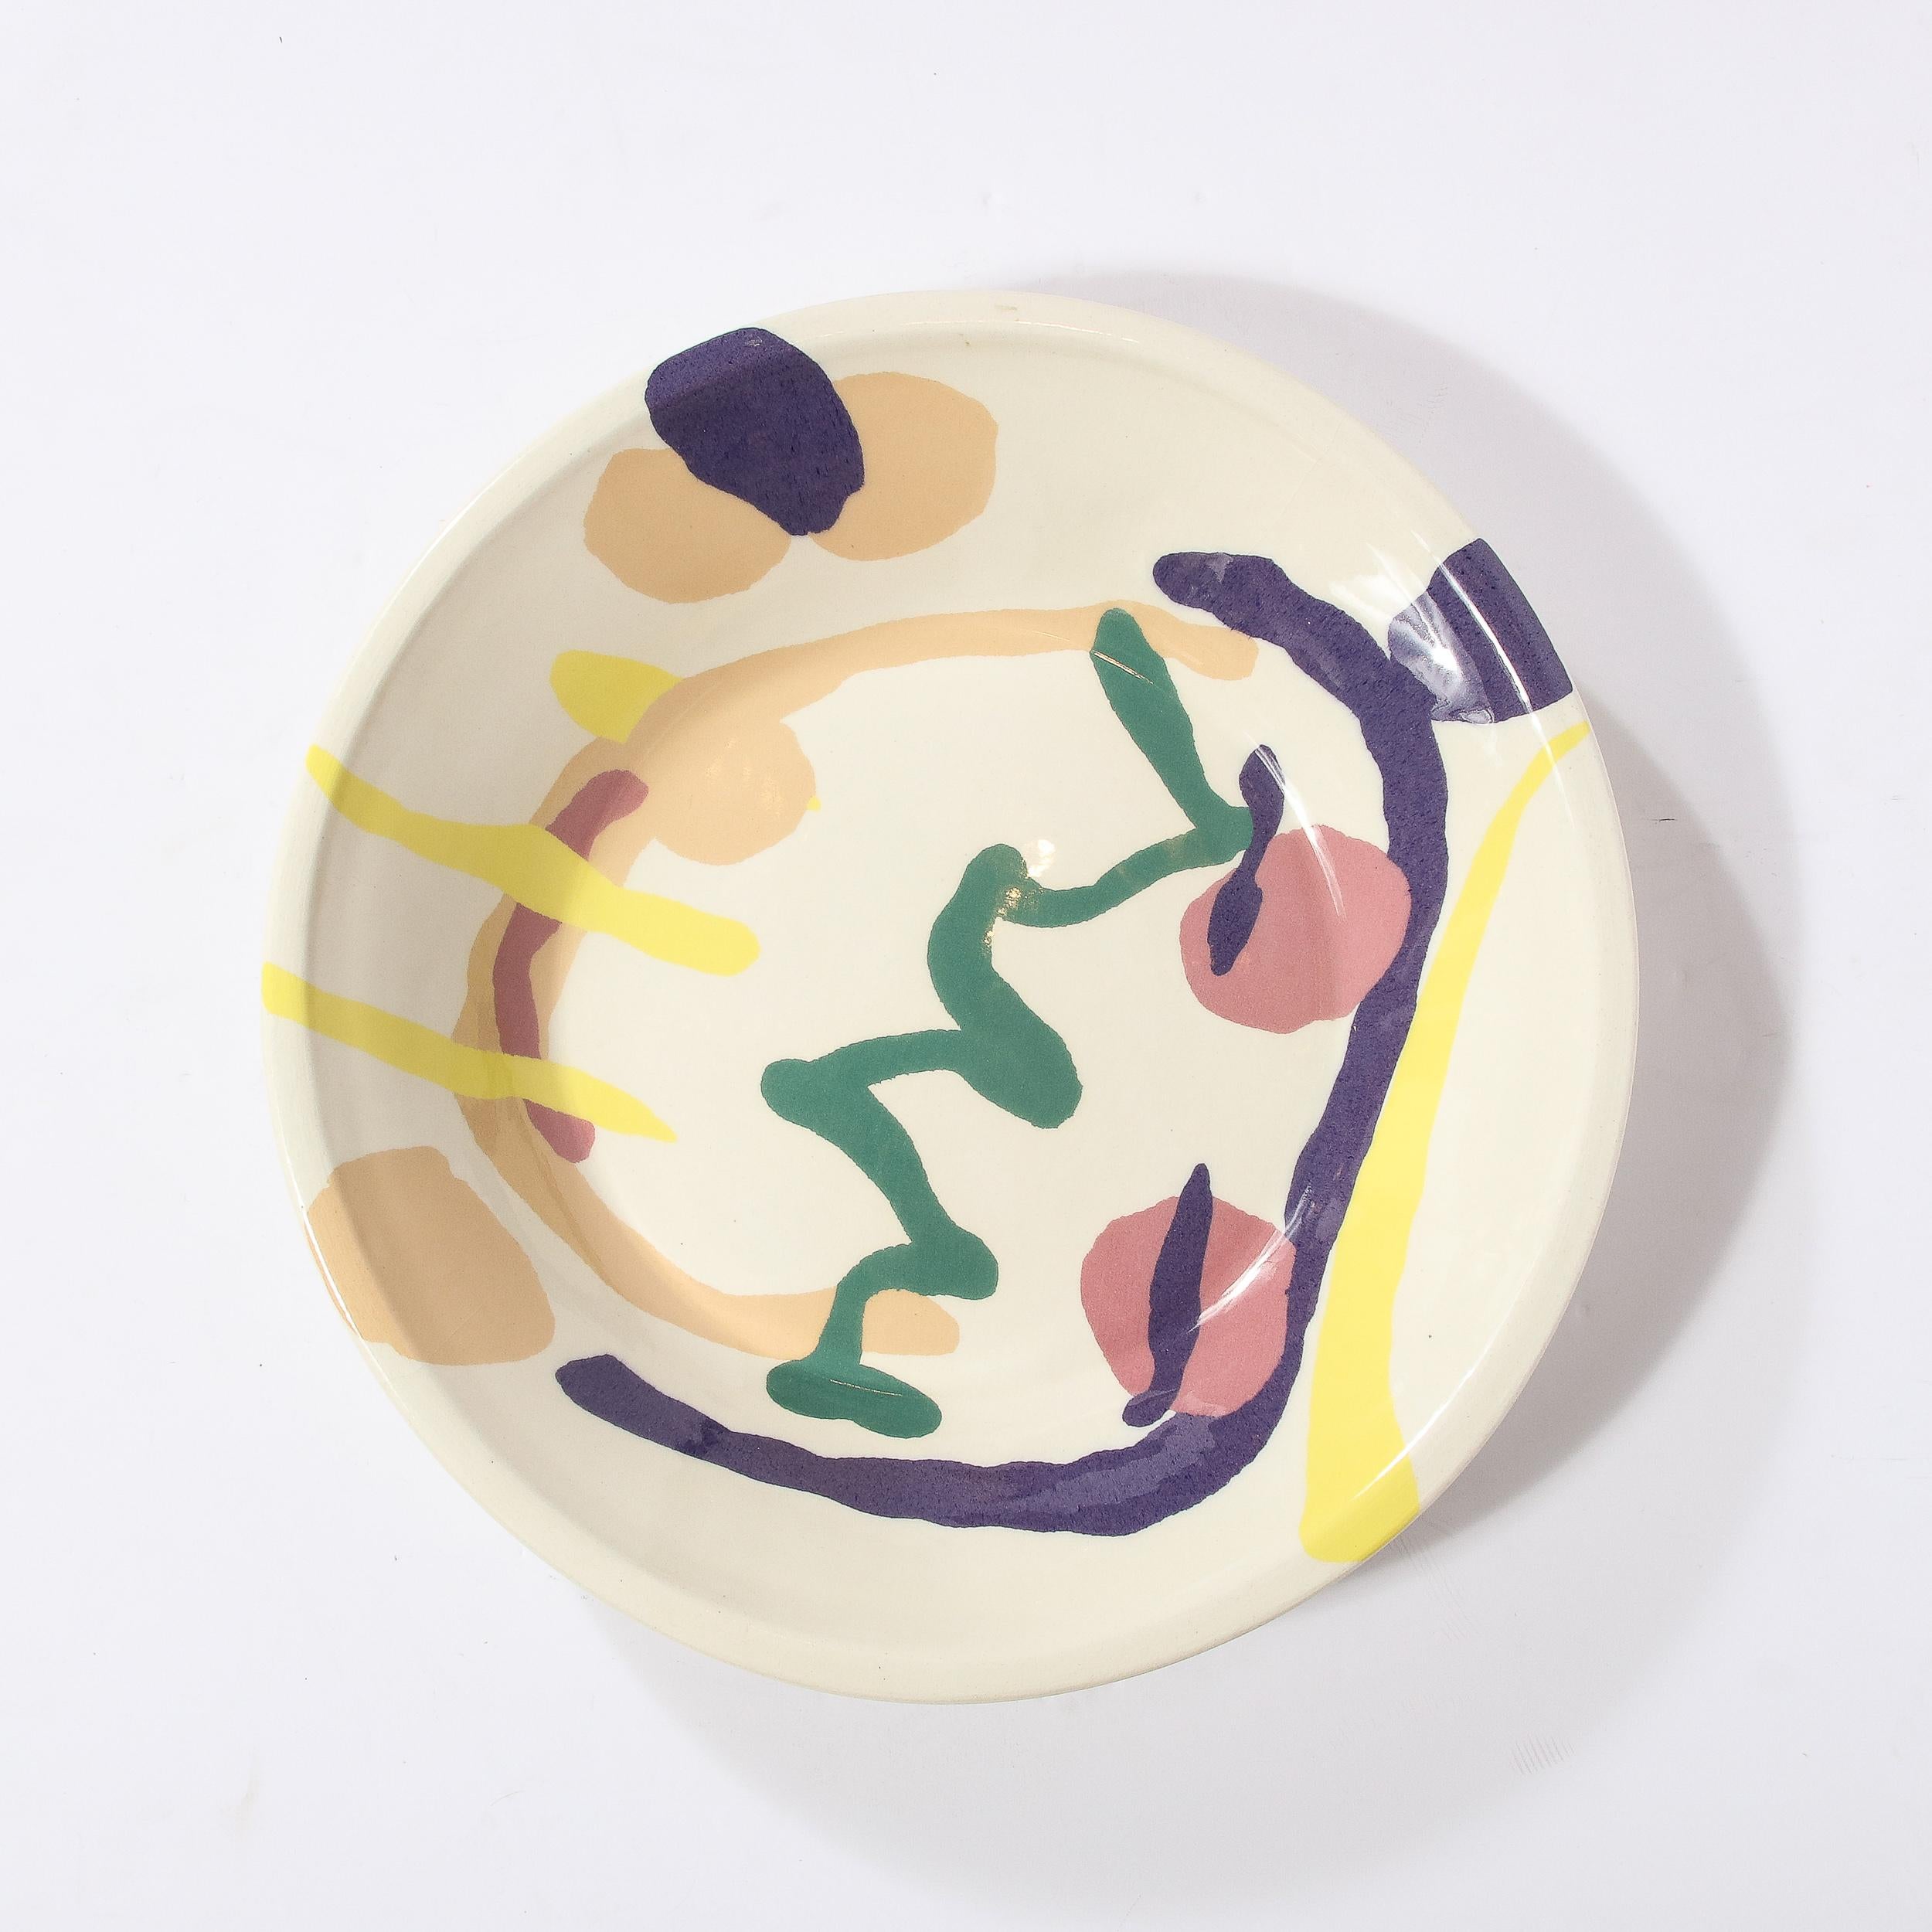 Ce magnifique bol de service en céramique moderniste de grande taille a été réalisé par l'artiste renommé Jurg Lanrein en Suisse au cours de la seconde moitié du XXe siècle. Il présente une forme circulaire austère sur un fond crème magnifiquement